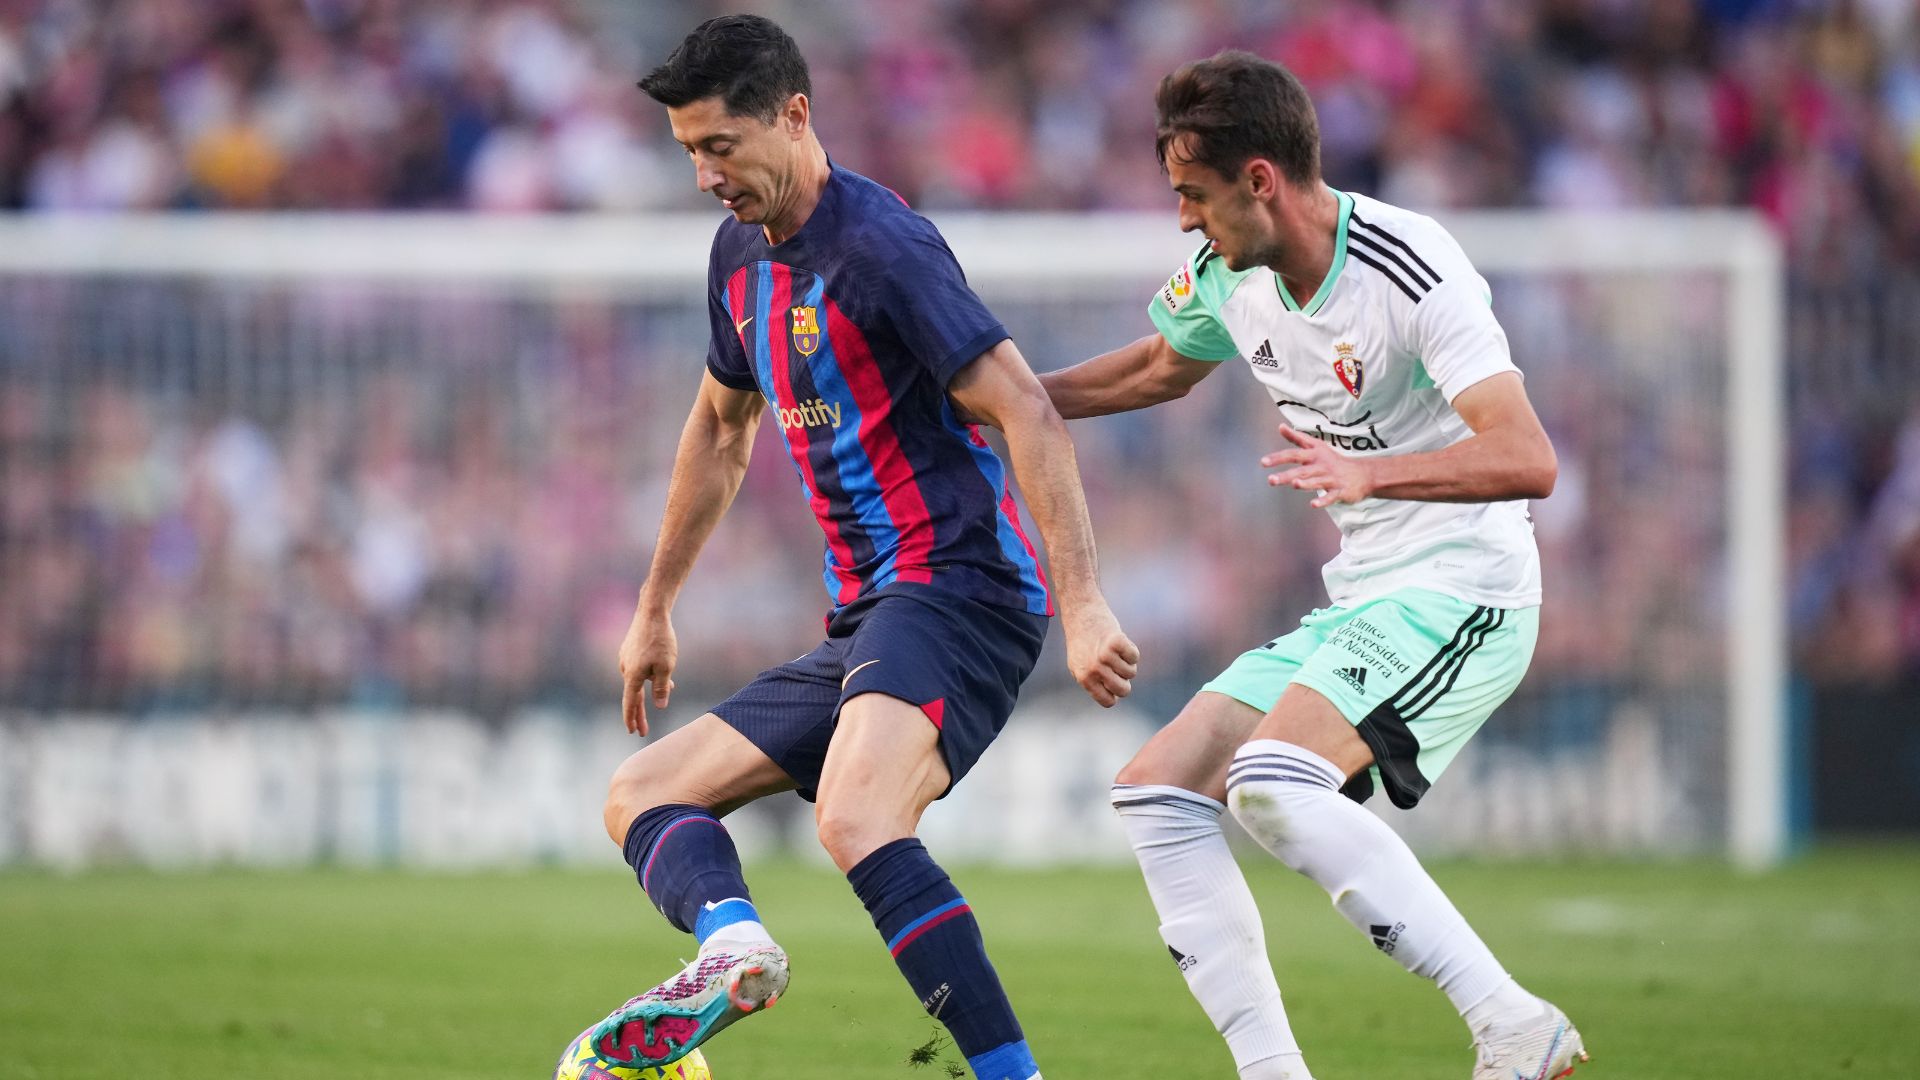 Jogo muito complicado entre Barcelona e Osasuna (Crédito: Getty Images)